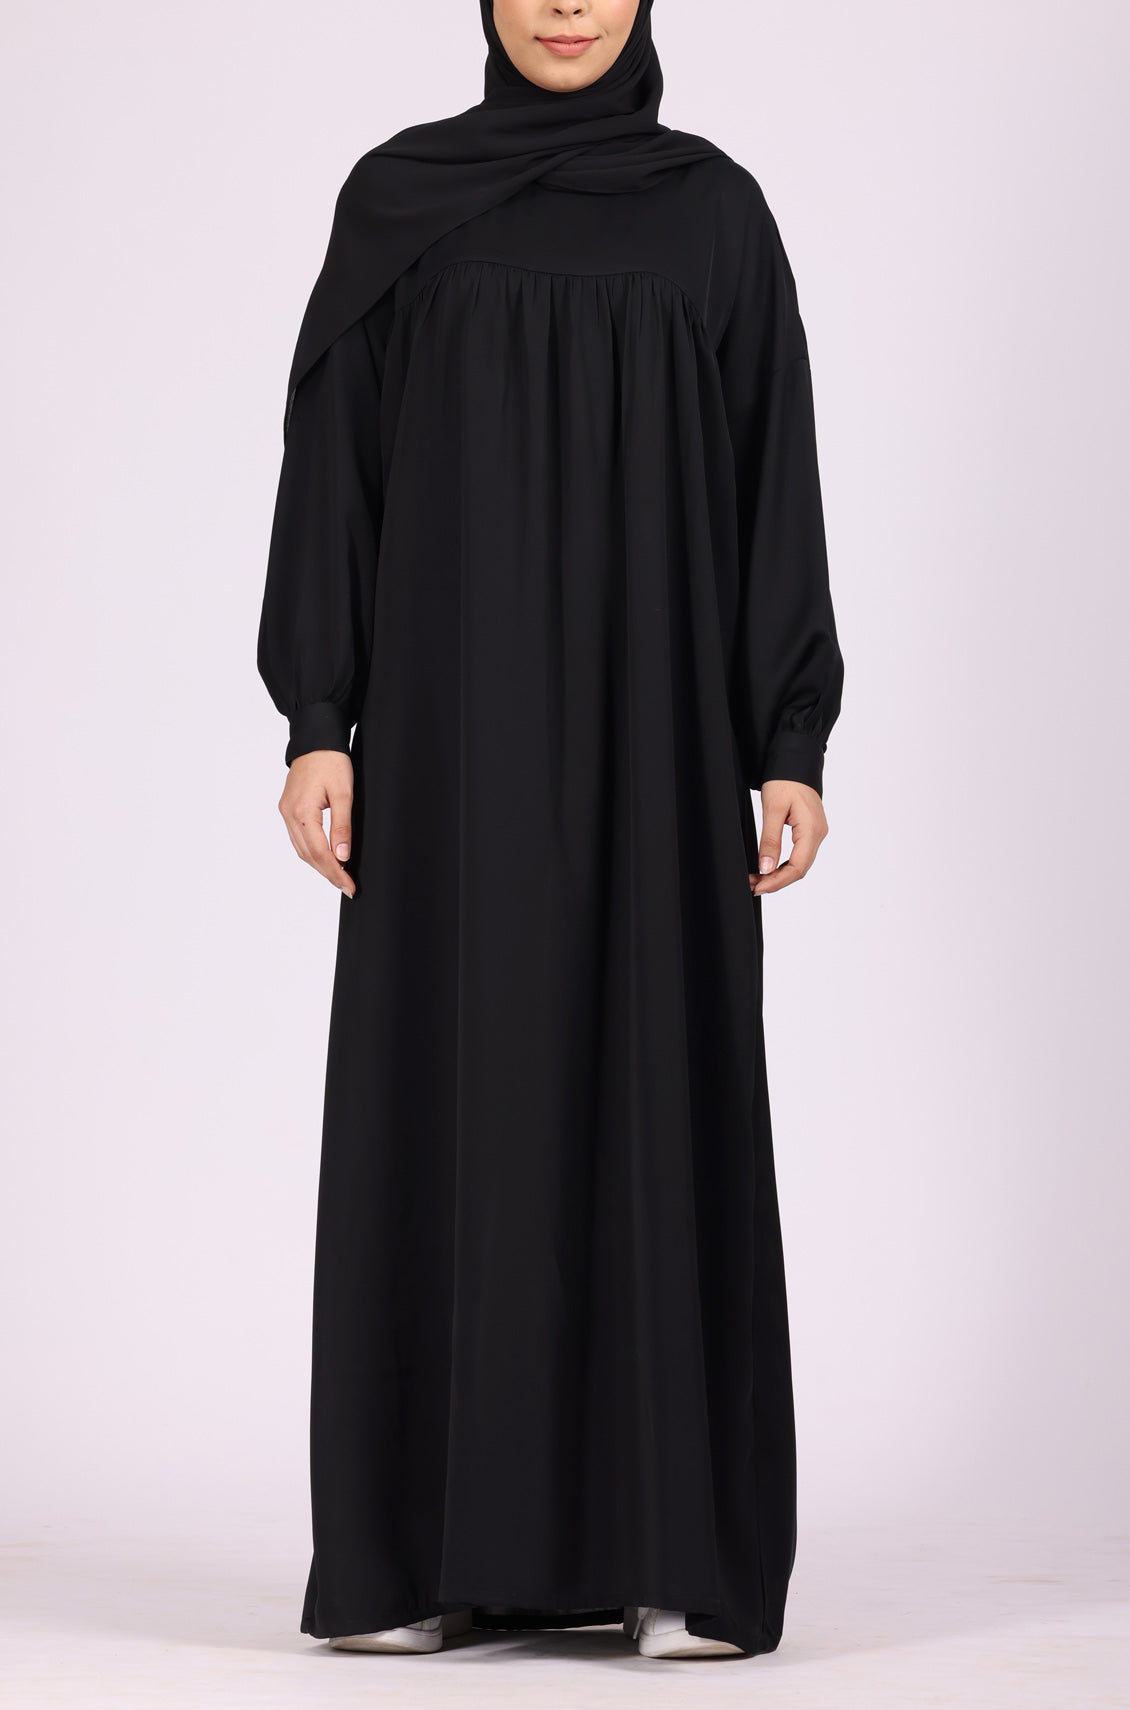 Black Satin Abaya Dress